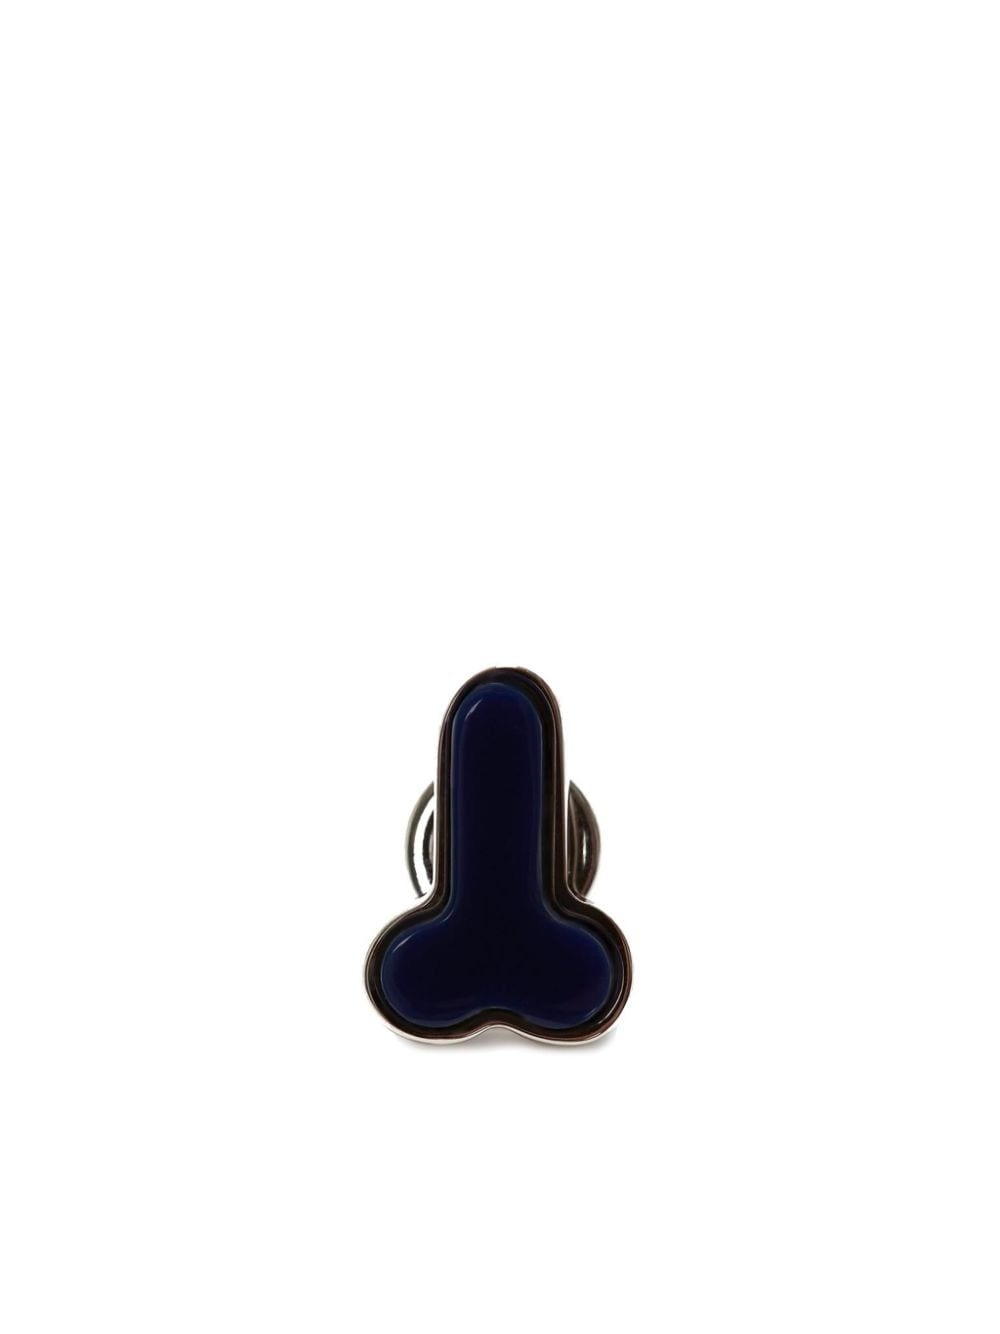 Penis stud earring - 1